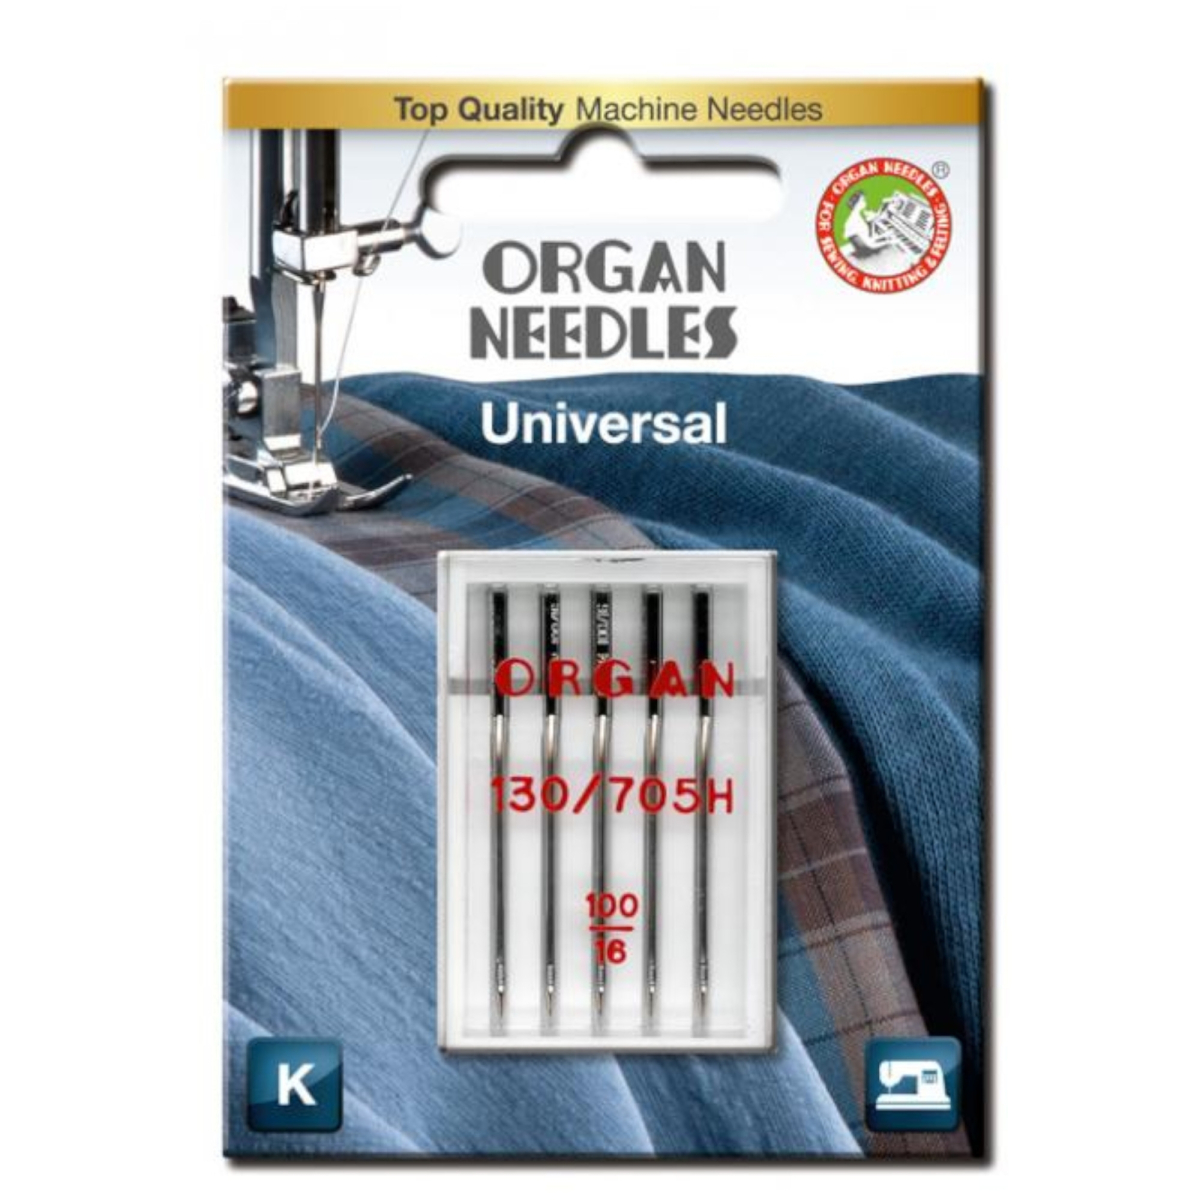 Organ Nähmaschine Nadeln Universal 130/705h Größe 100 X Schachtel mit 100 Stück 